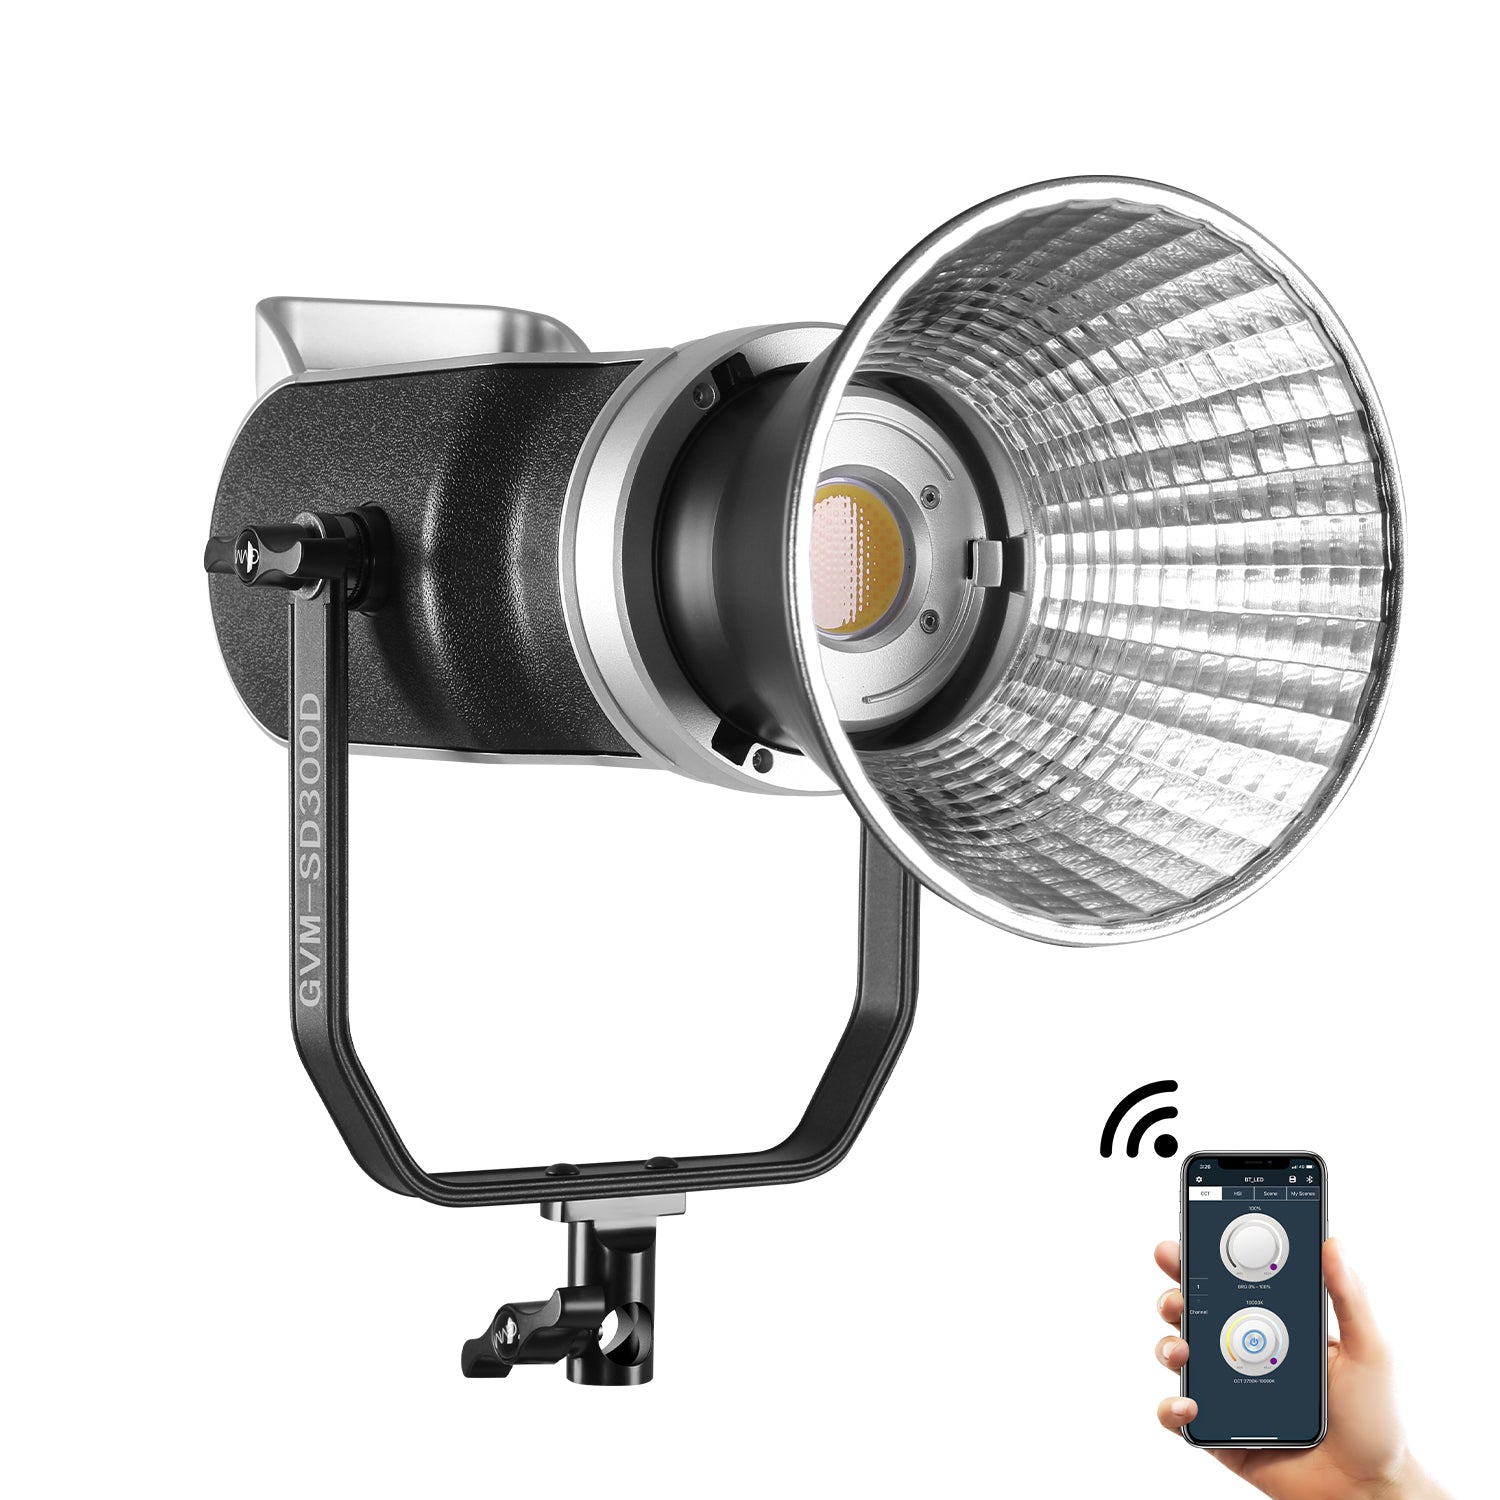 GVM 300W High Power Bi-Color LED Spotlight Light (BOGO) - GVMLED